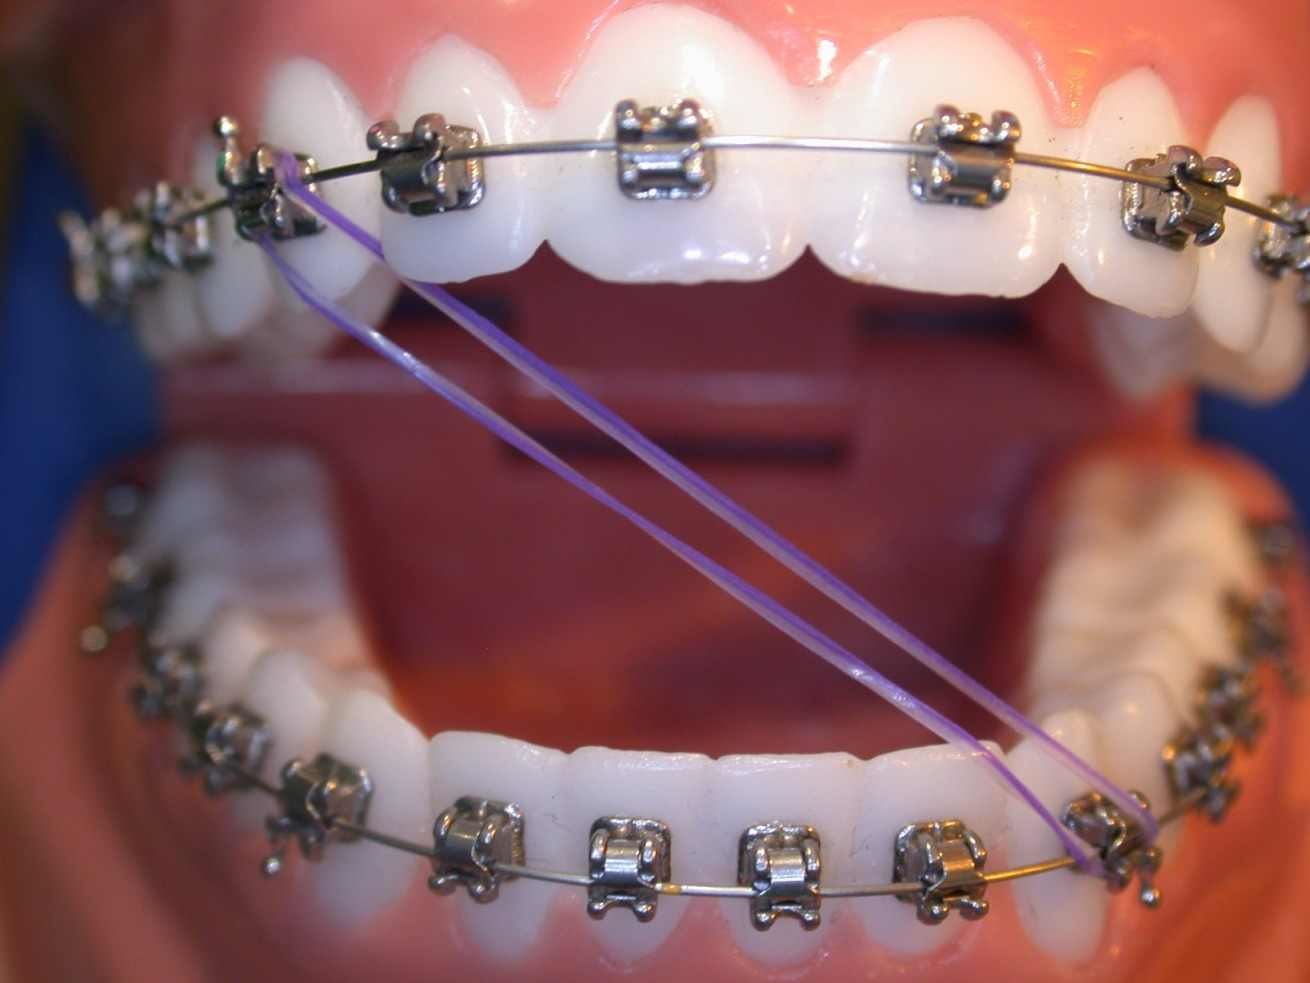 إليك تفاصيل عن تقويم الاسنان المطاط المتصل وكفية استخدامه!